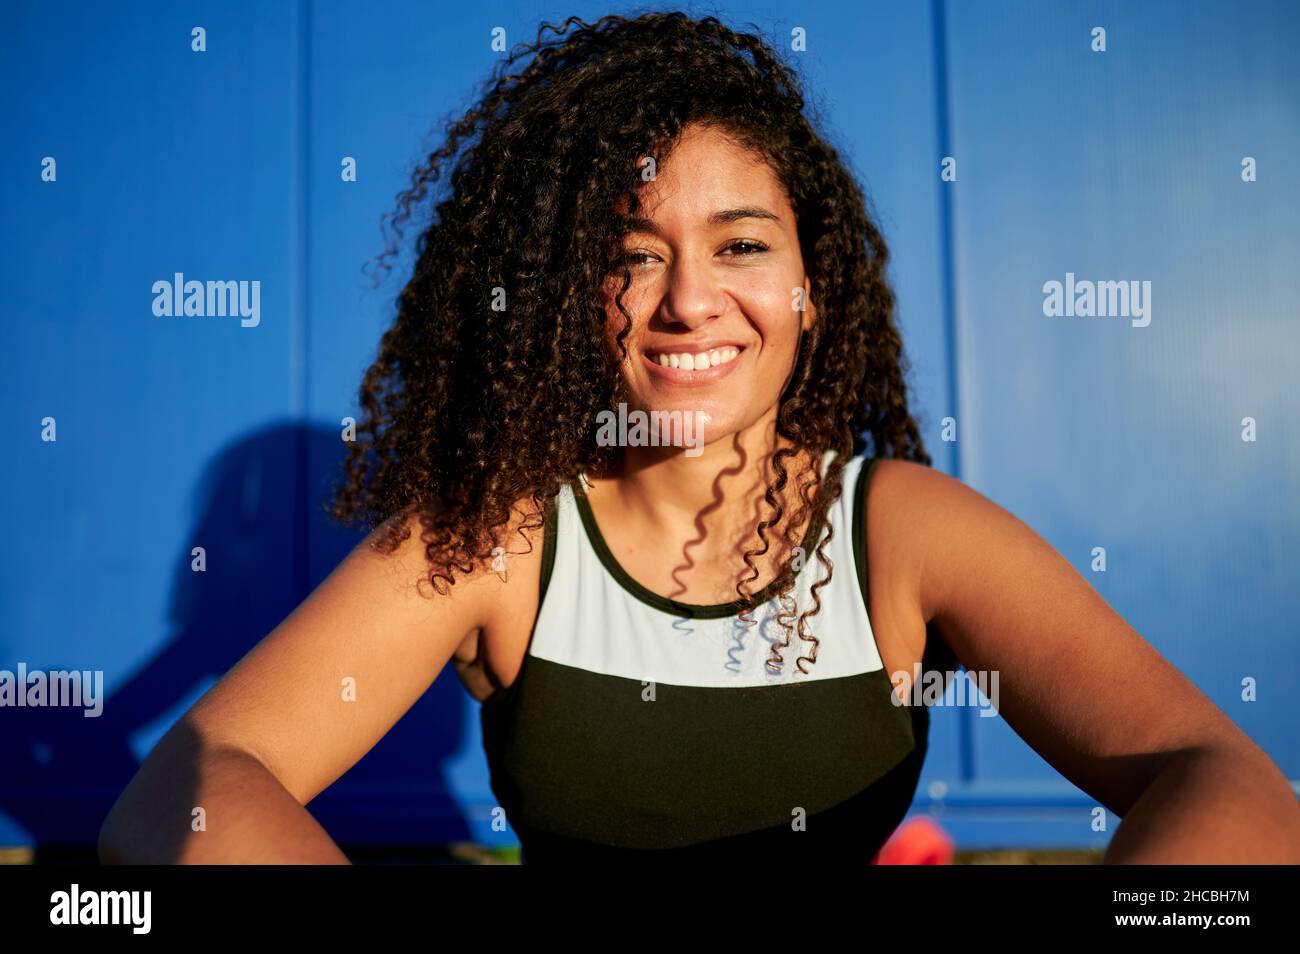 Junge Sportlerin lächelt vor der blauen Wand Stockfoto